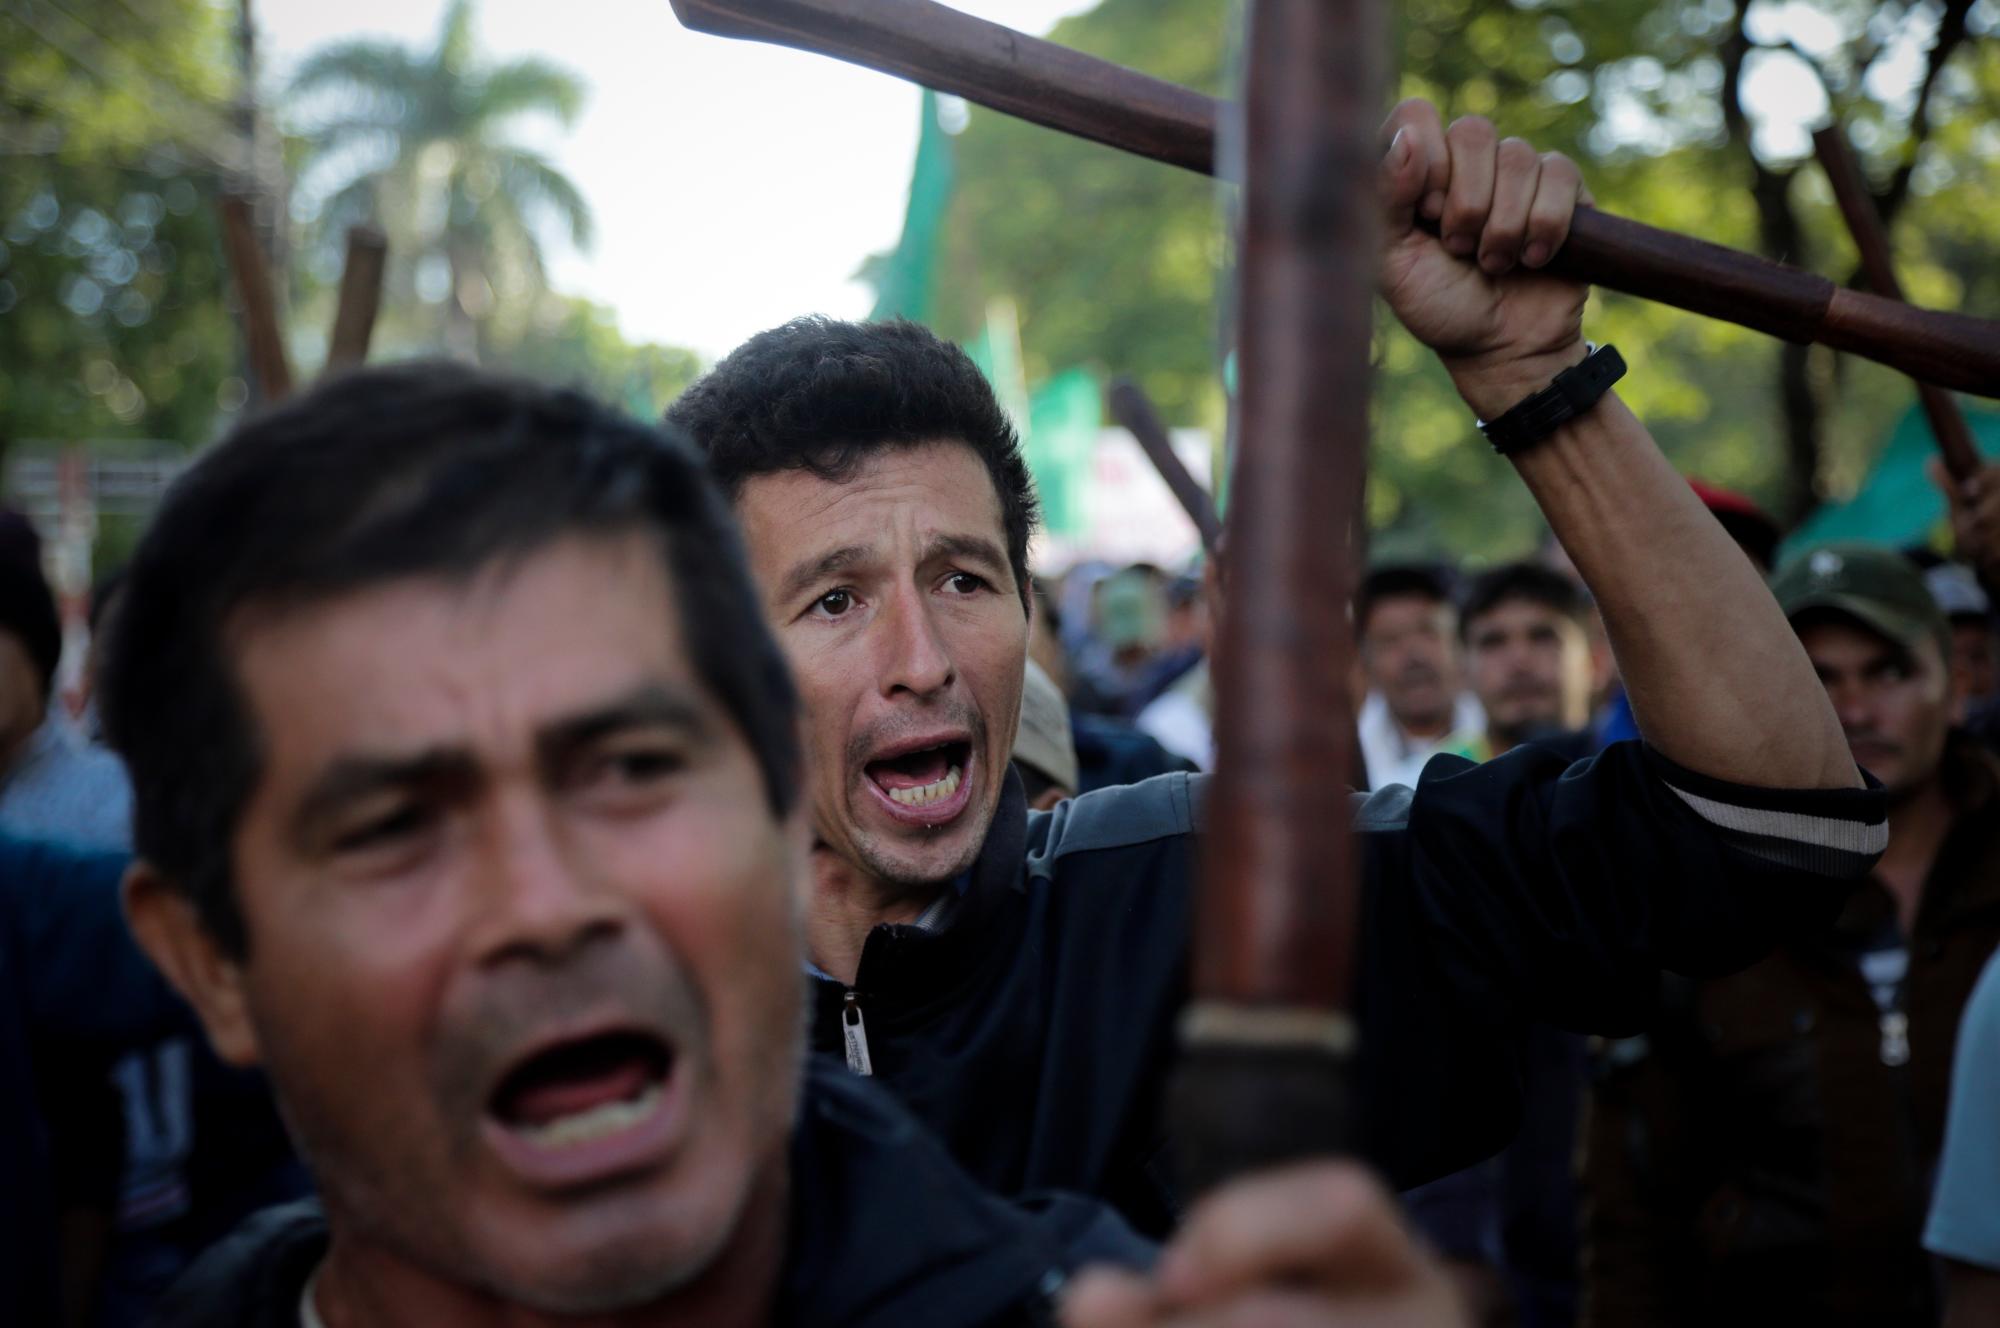 En imagen del jueves 21 de marzo de 2019, agricultores alzan palos y lanzan consignas contra el gobierno del presidente Mario Abdo Benítez durante la marcha anual de la Federación Nacional Campesina en demanda de más tierras y apoyo del gobierno, en Asunción, Paraguay.